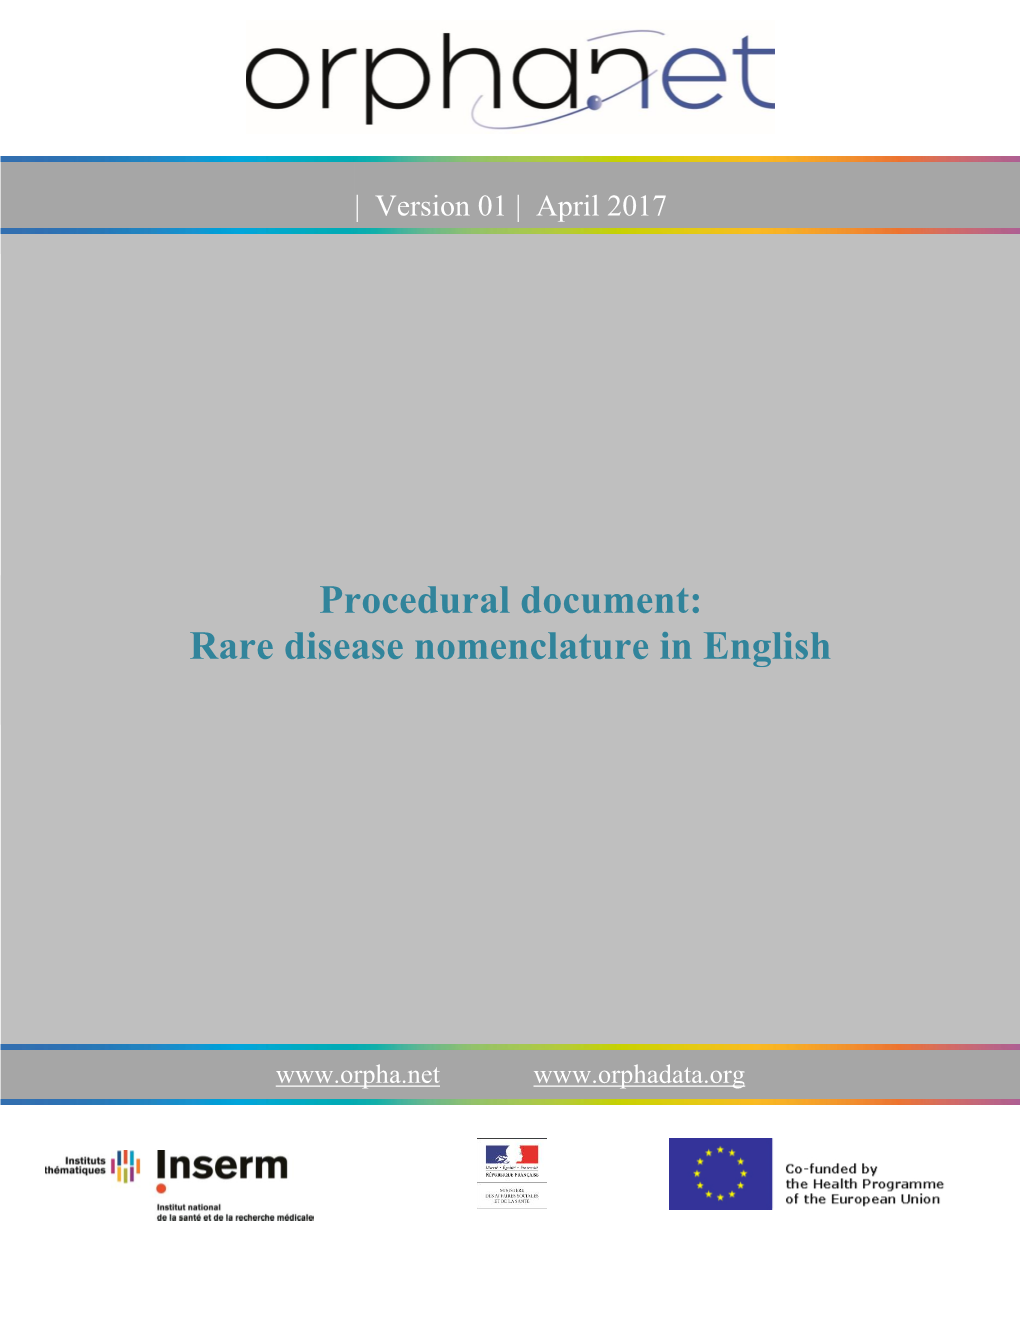 Procedural Document: Rare Disease Nomenclature in English